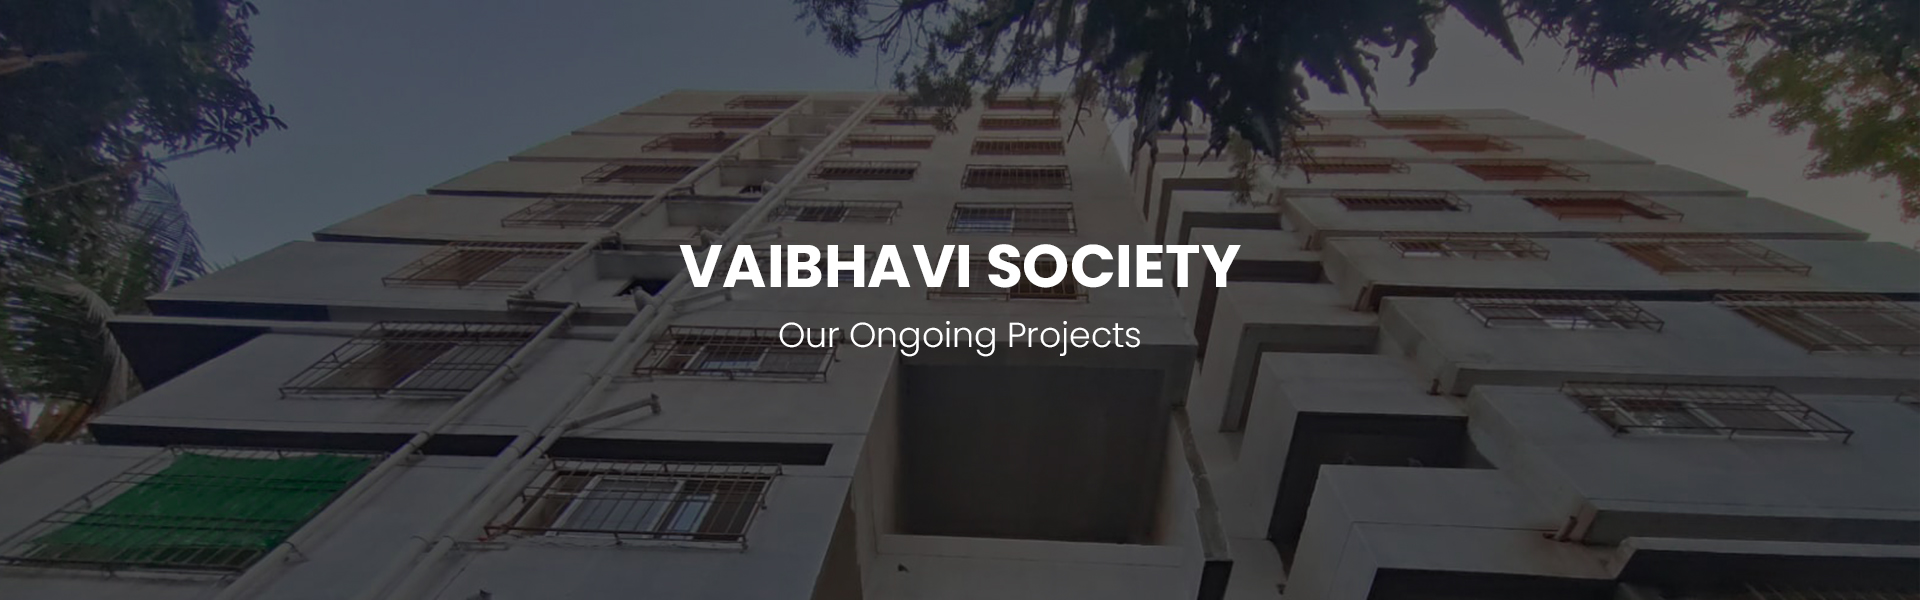 Vaibhavi Society_1920X600_3